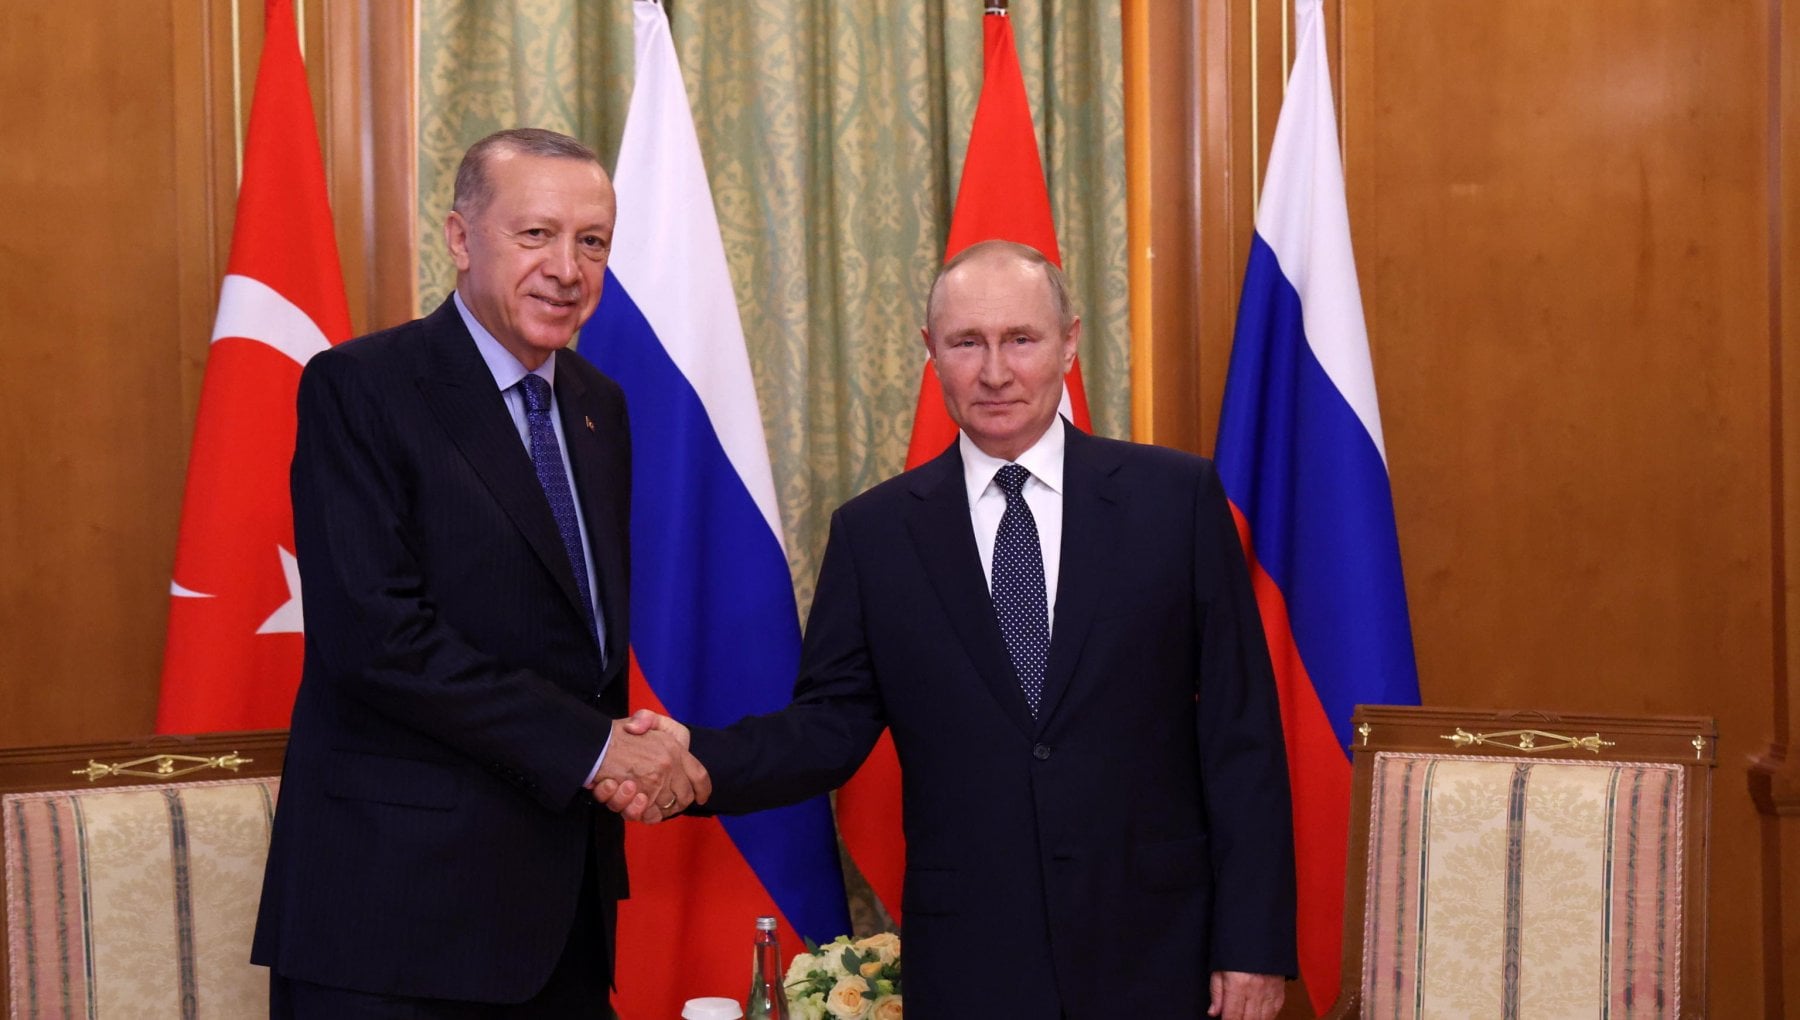 Erdogan si distanzia da Putin: "L'annessione della Crimea da parte russa è illegittima"